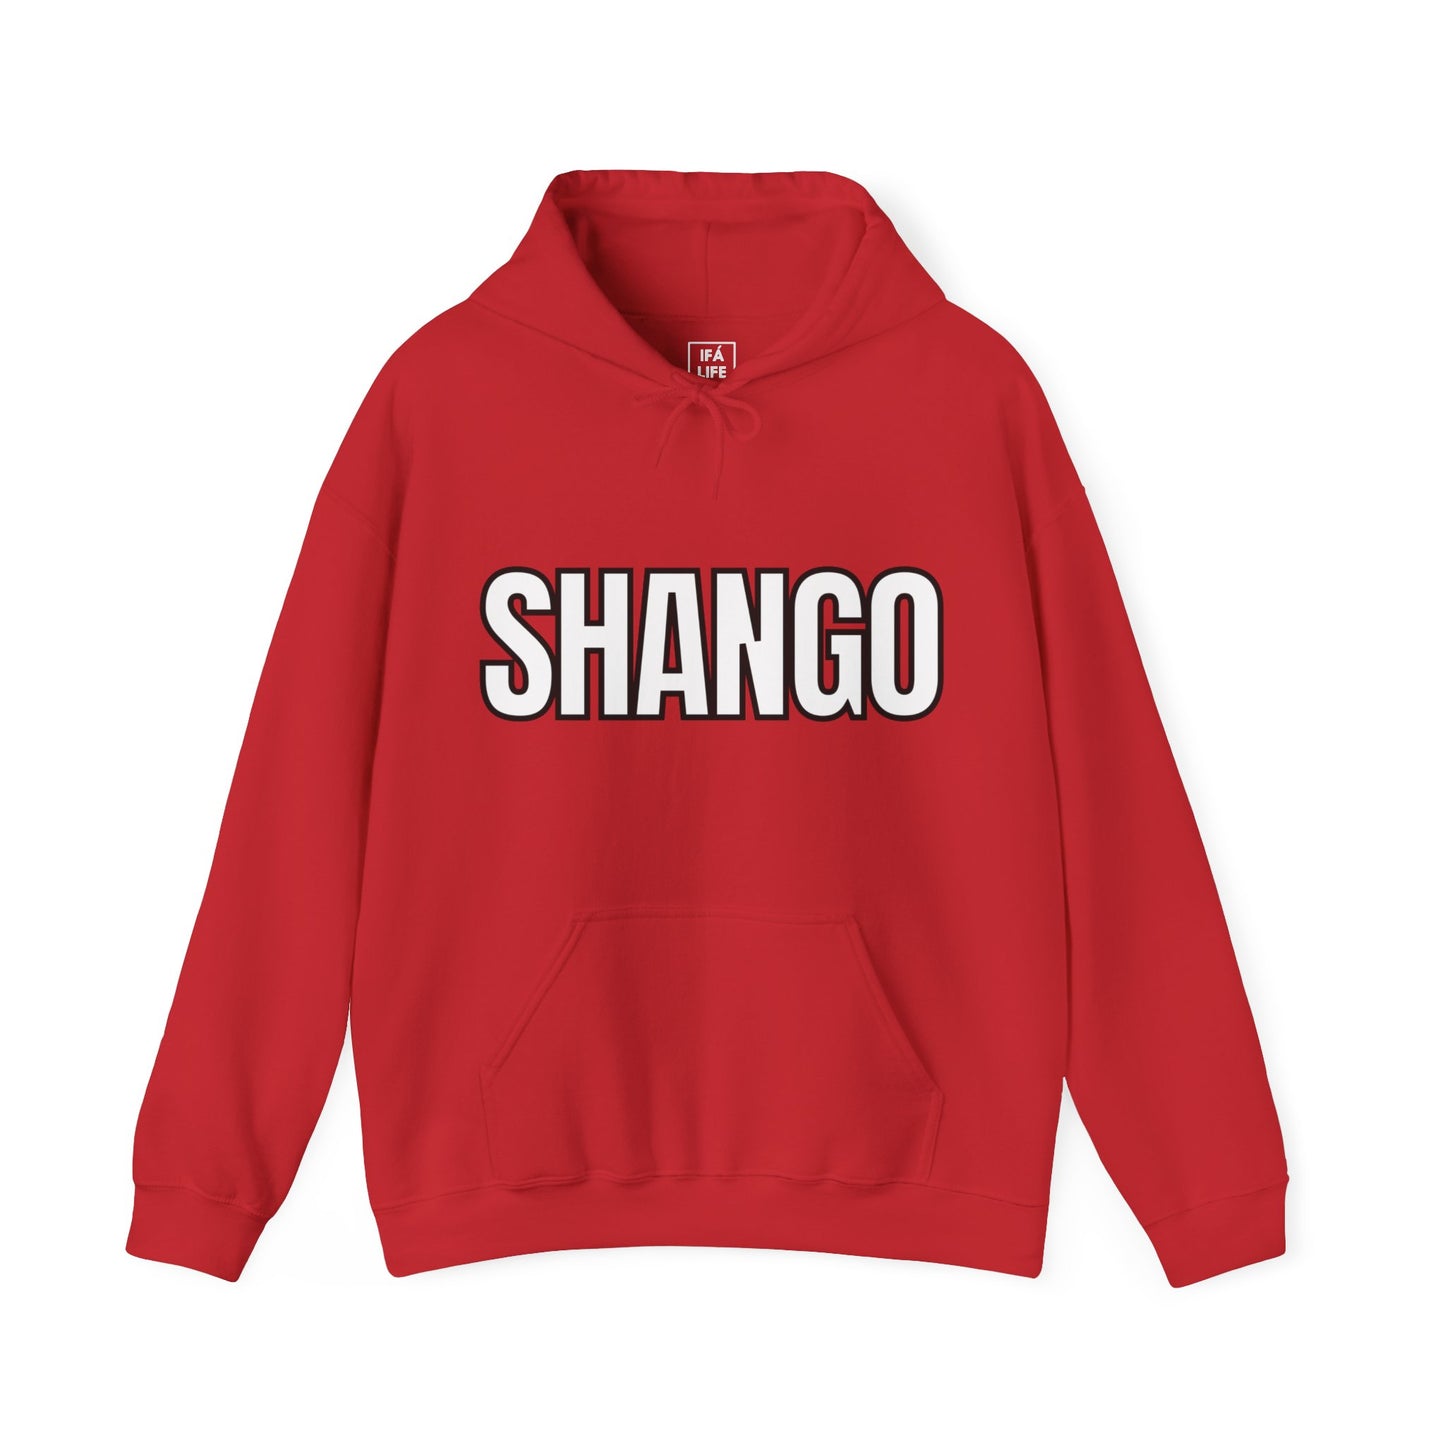 SHANGO / CHANGO Orisha Unisex Hoodie